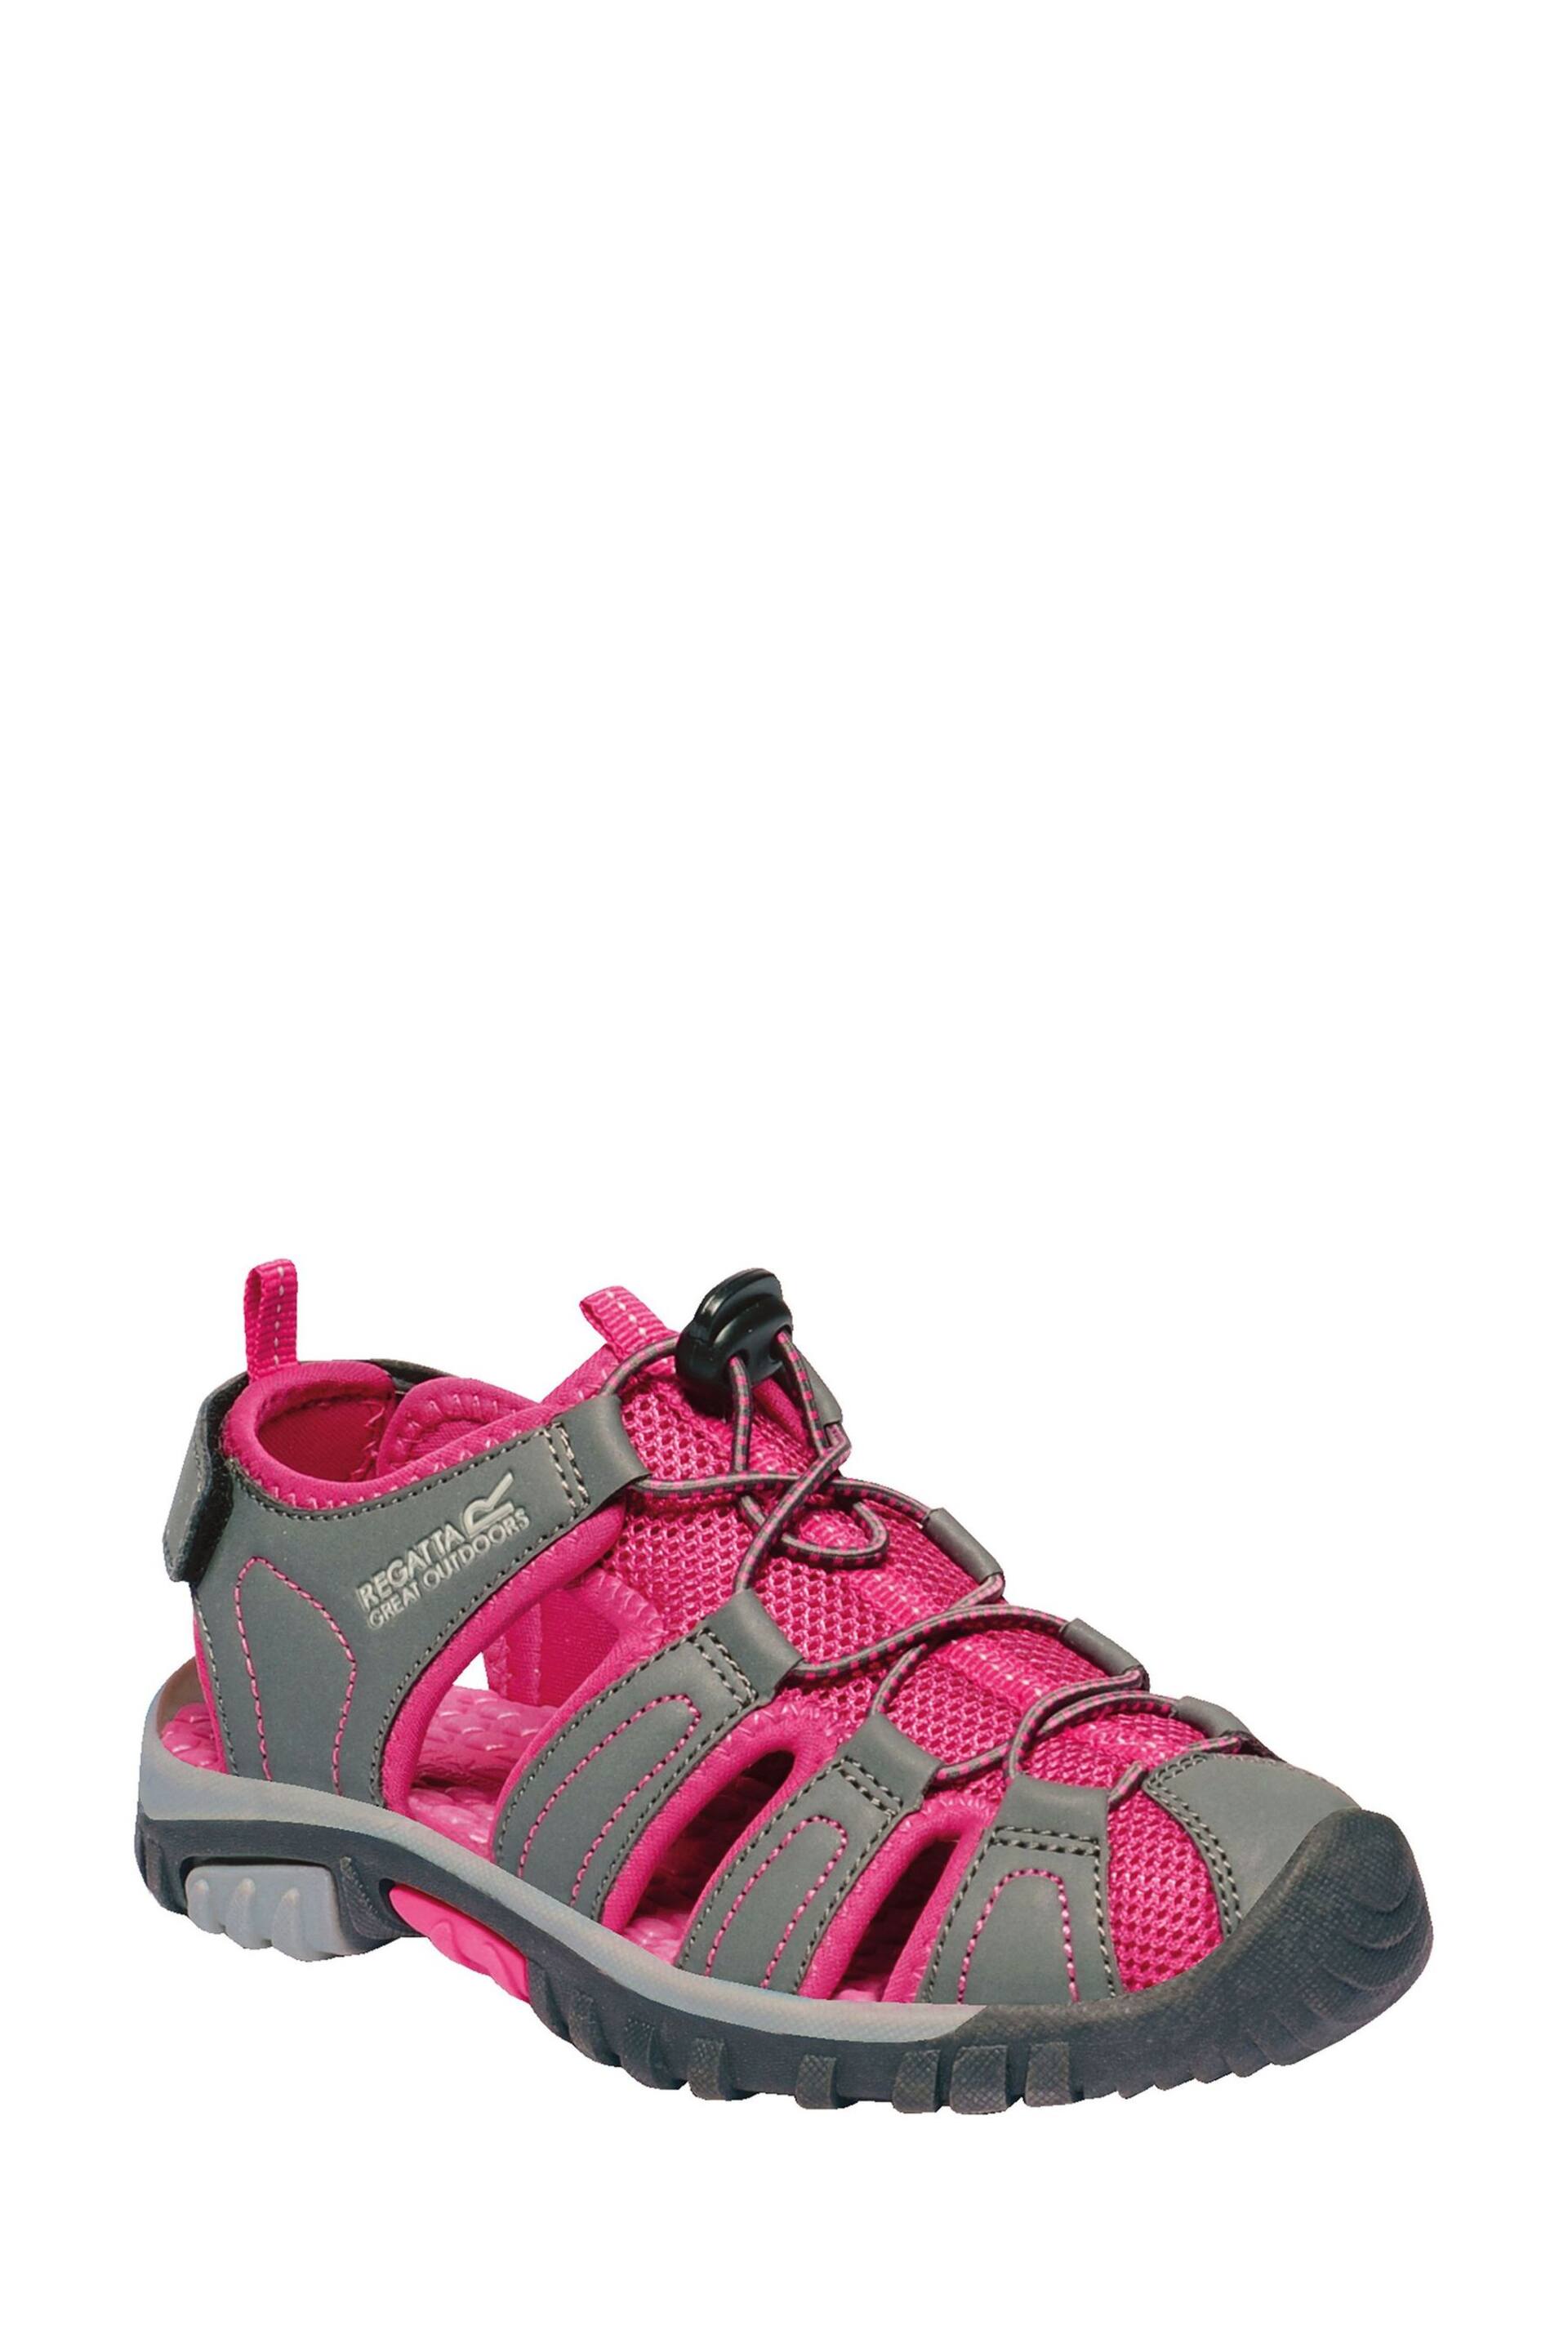 Regatta Grey Junior Westshore Sandals - Image 2 of 6